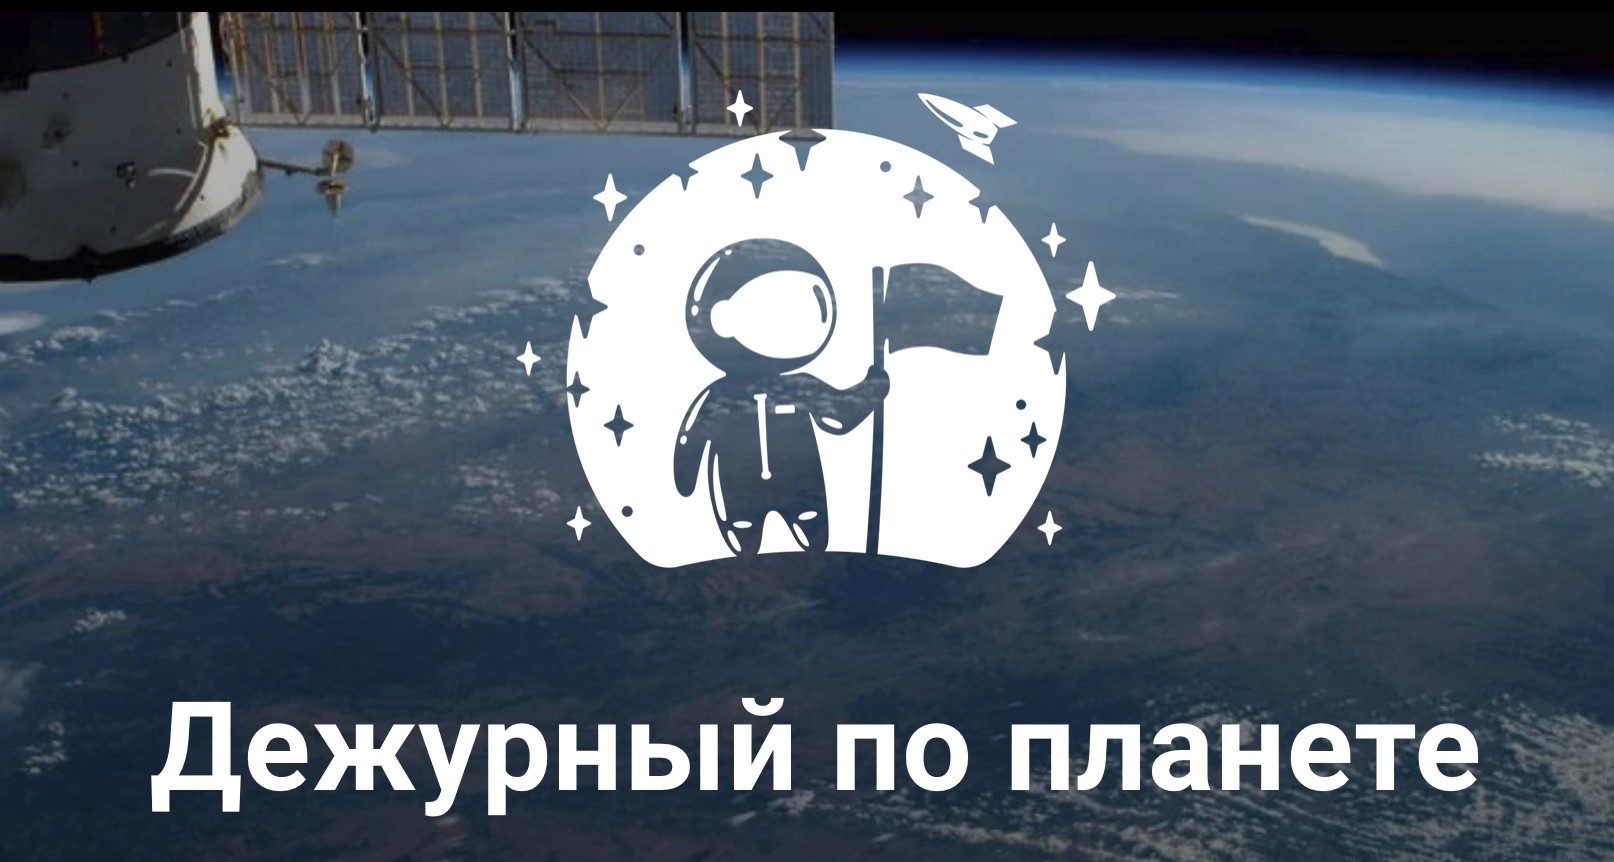 В Ханты-Мансийске состоялось торжественное открытие Космической смены «Дежурный по планете».